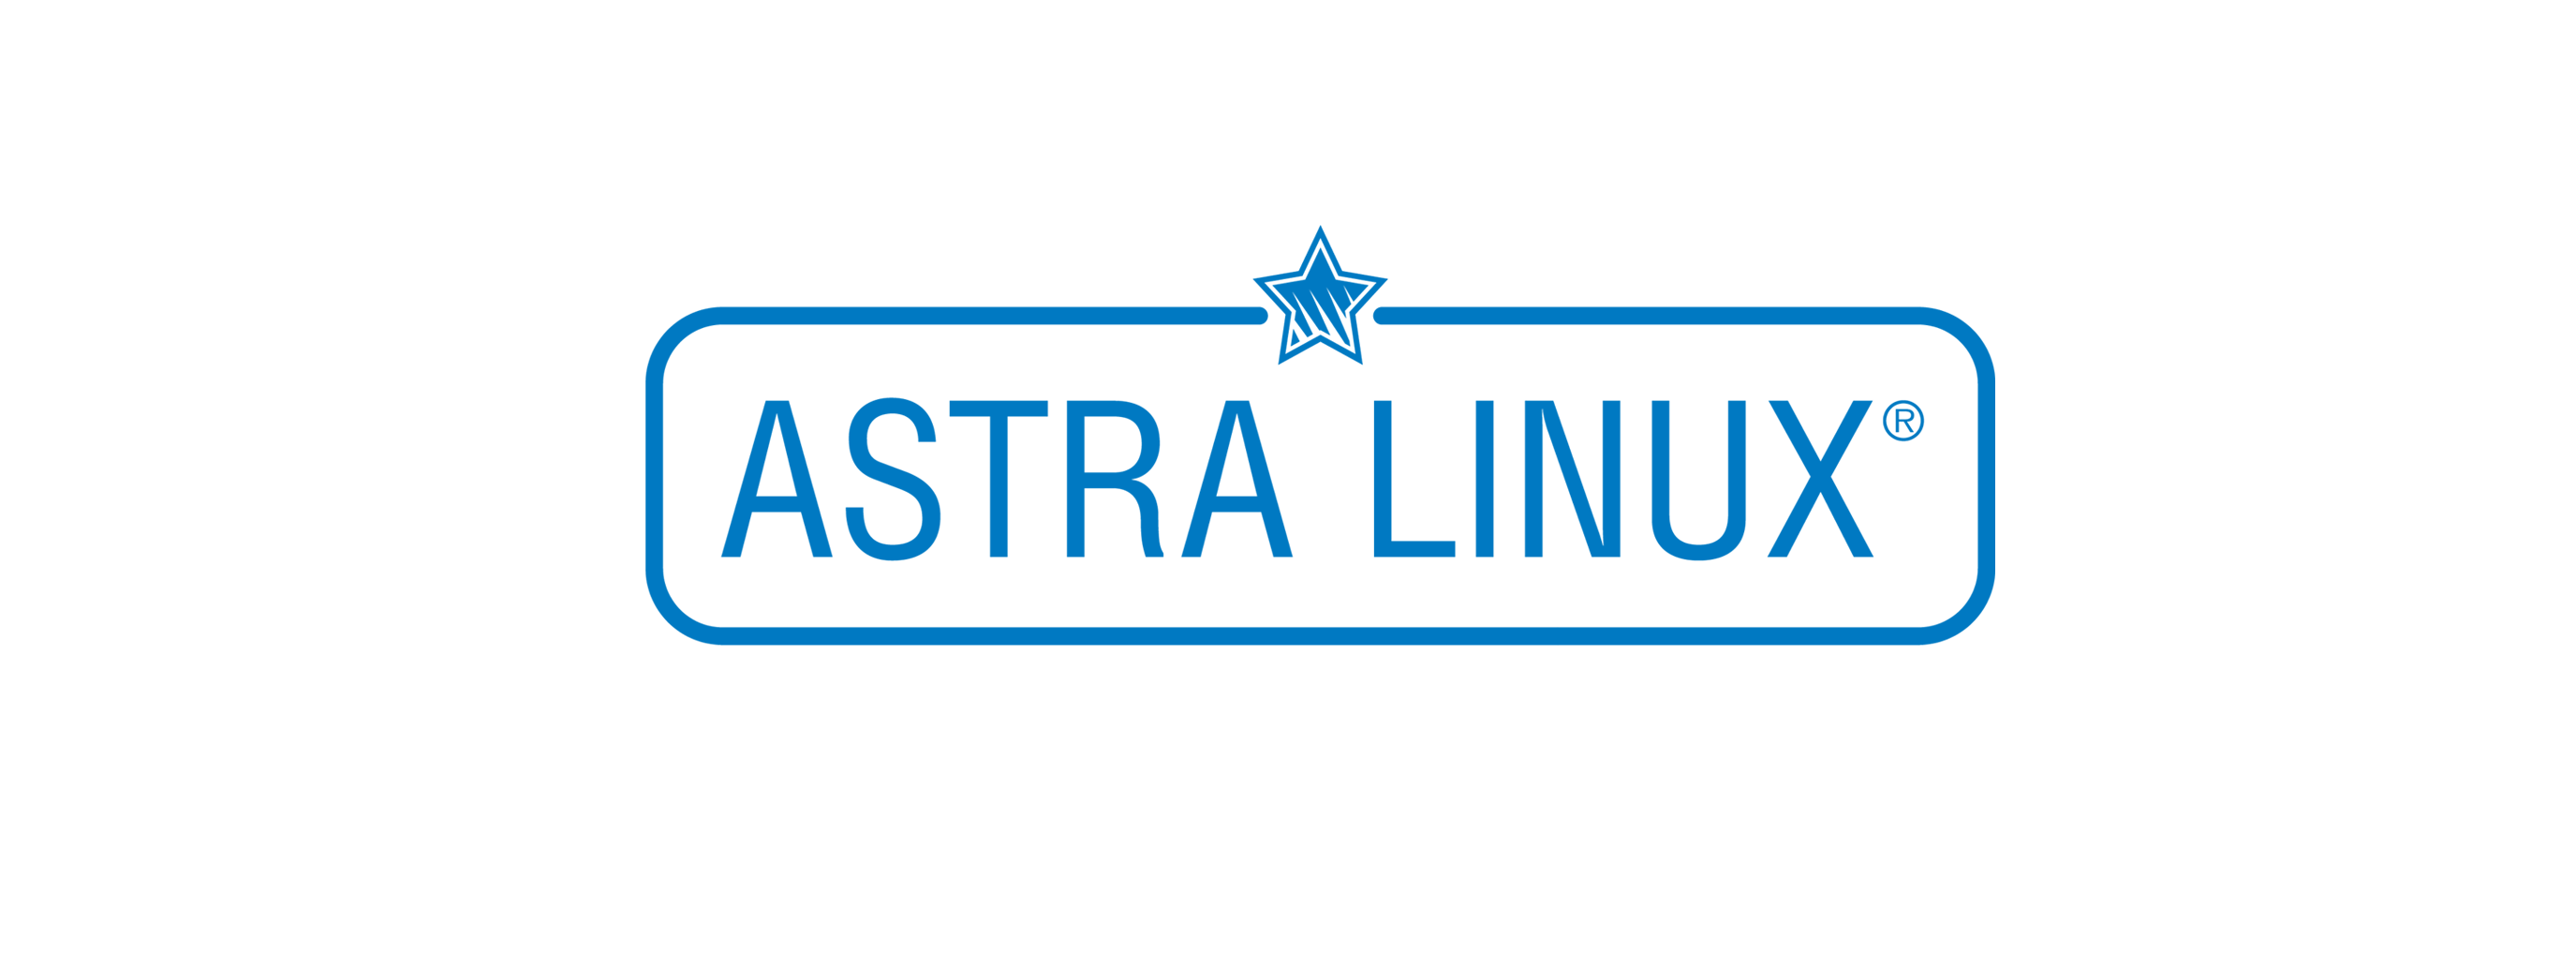 Лицензия РусБИТех Astra Linux Special Edition (очередное обновление 1.7), уровень защищенности Максимальный (Смоленск), РУСБ.10015-01 (ФСТЭК), Russian, на 12 месяцев базовая лицензия для виртуального сервера, электронный ключ (OS2101X8617COP000VS02-PO12)